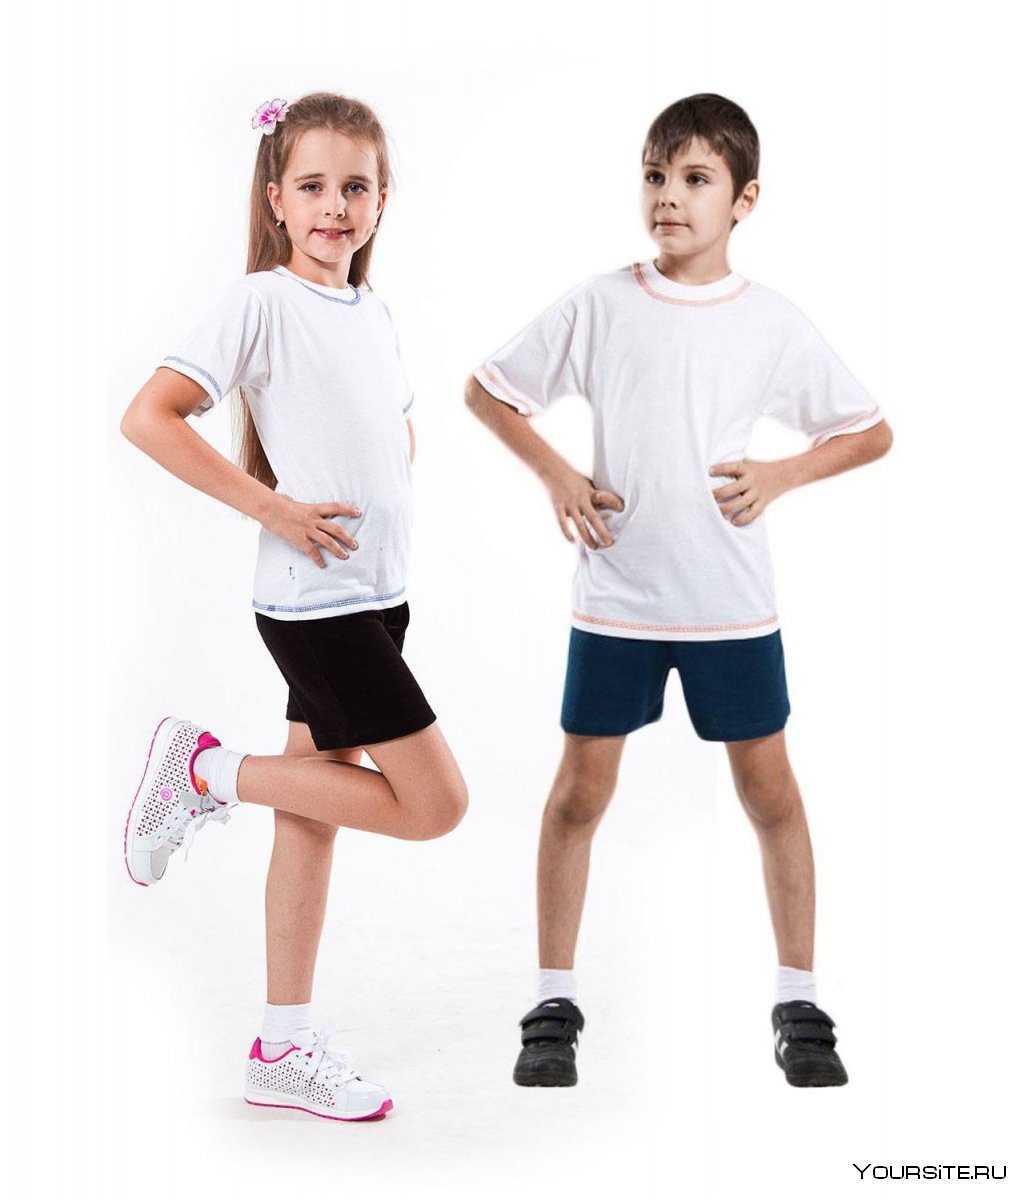 Дети в спортивной форме